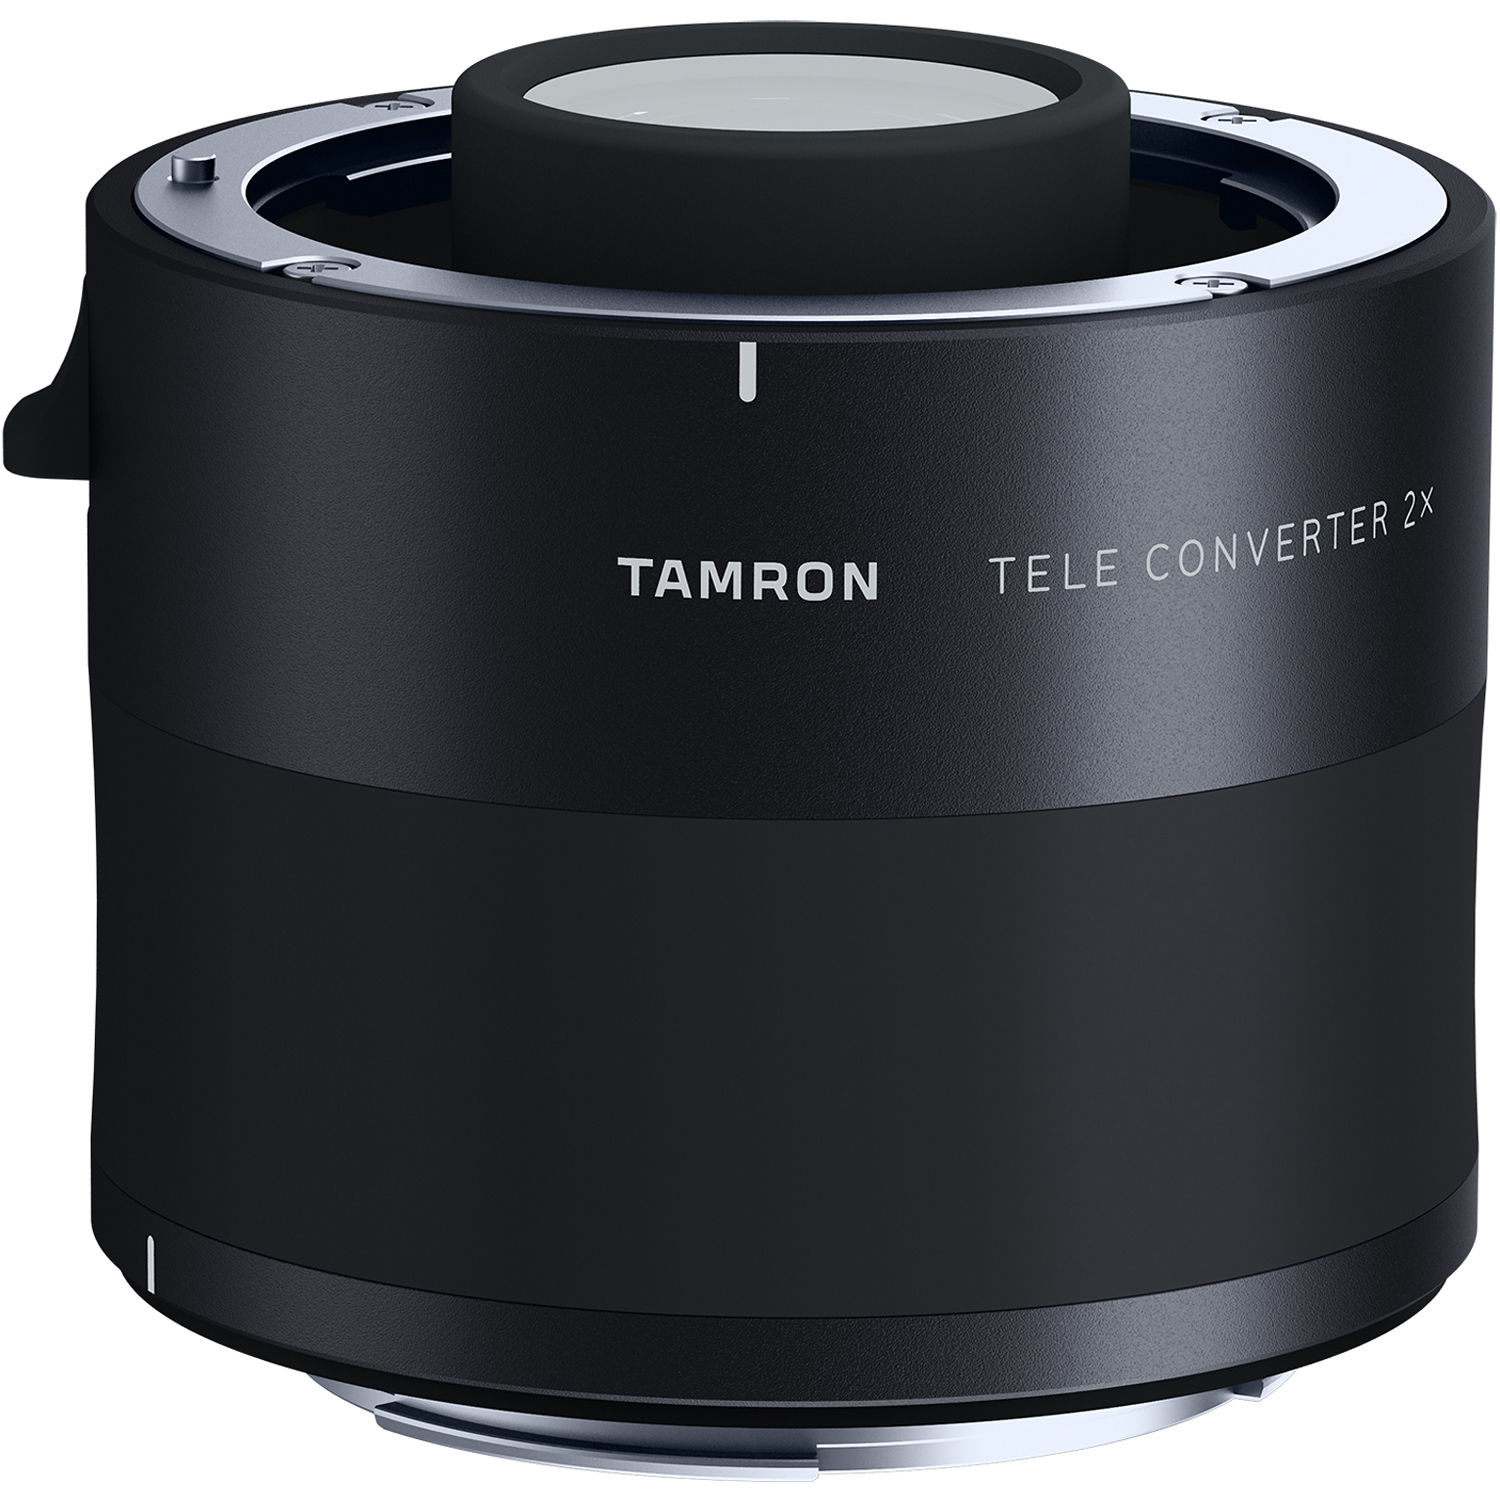 Tamron 2.0X Teleconverter for Canon EF